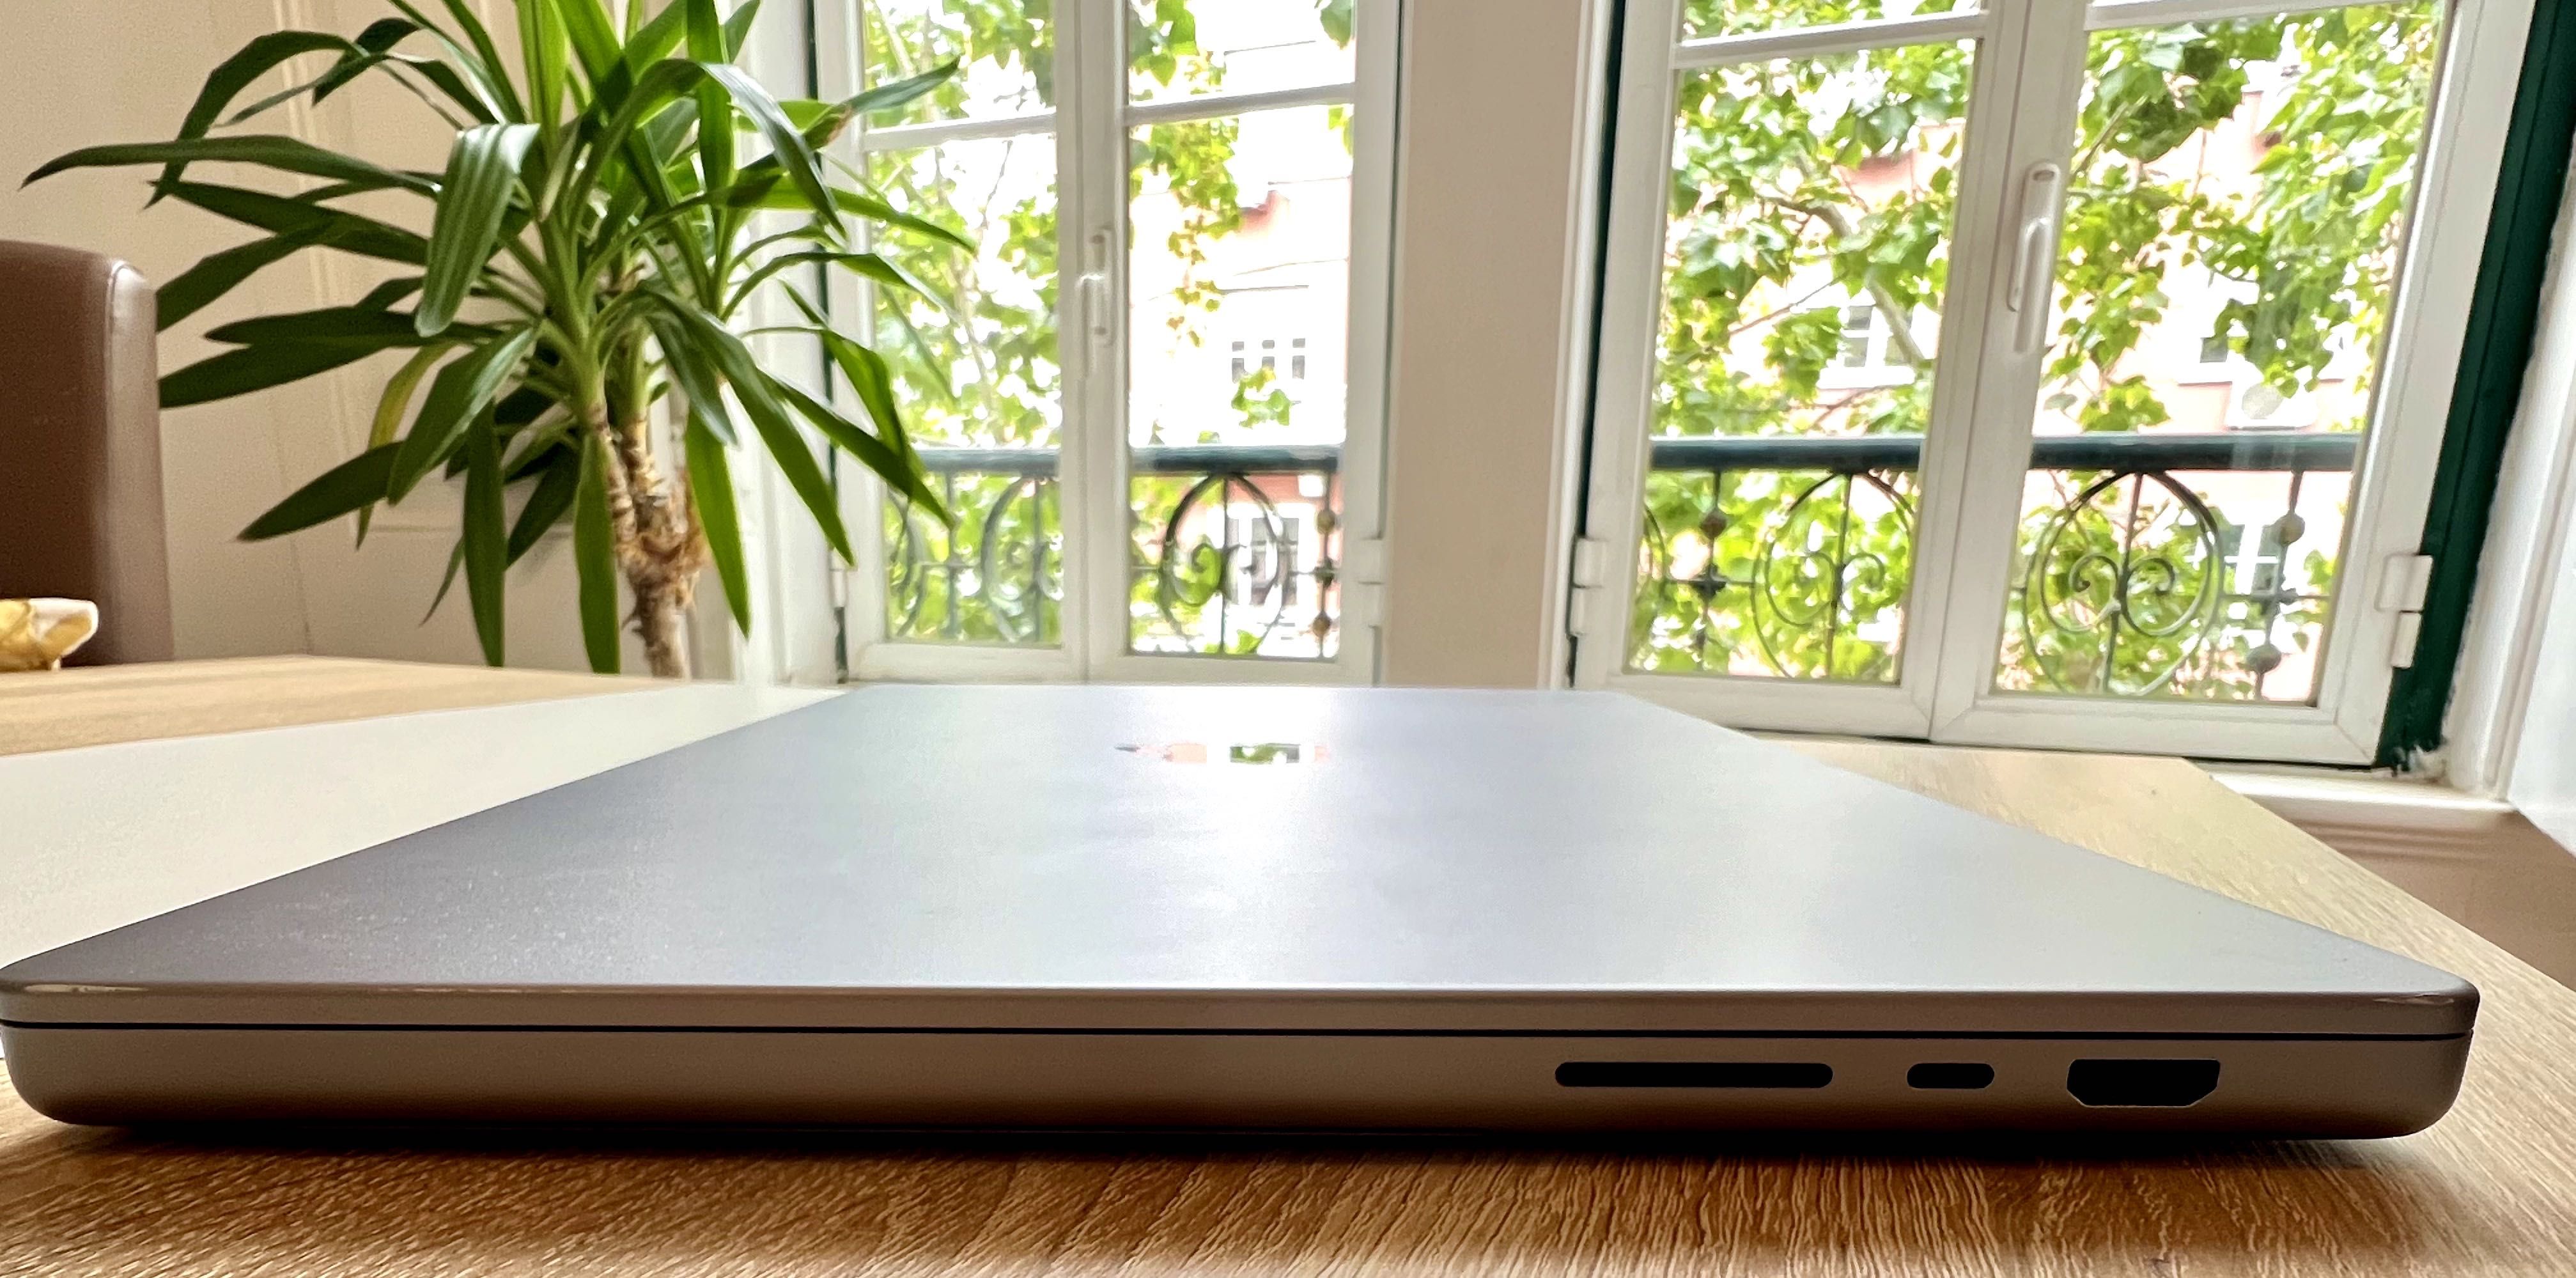 MacBook Pro 16 M1 Max 2021 32gb Ram 1TB SSD (German Keyboard ! )